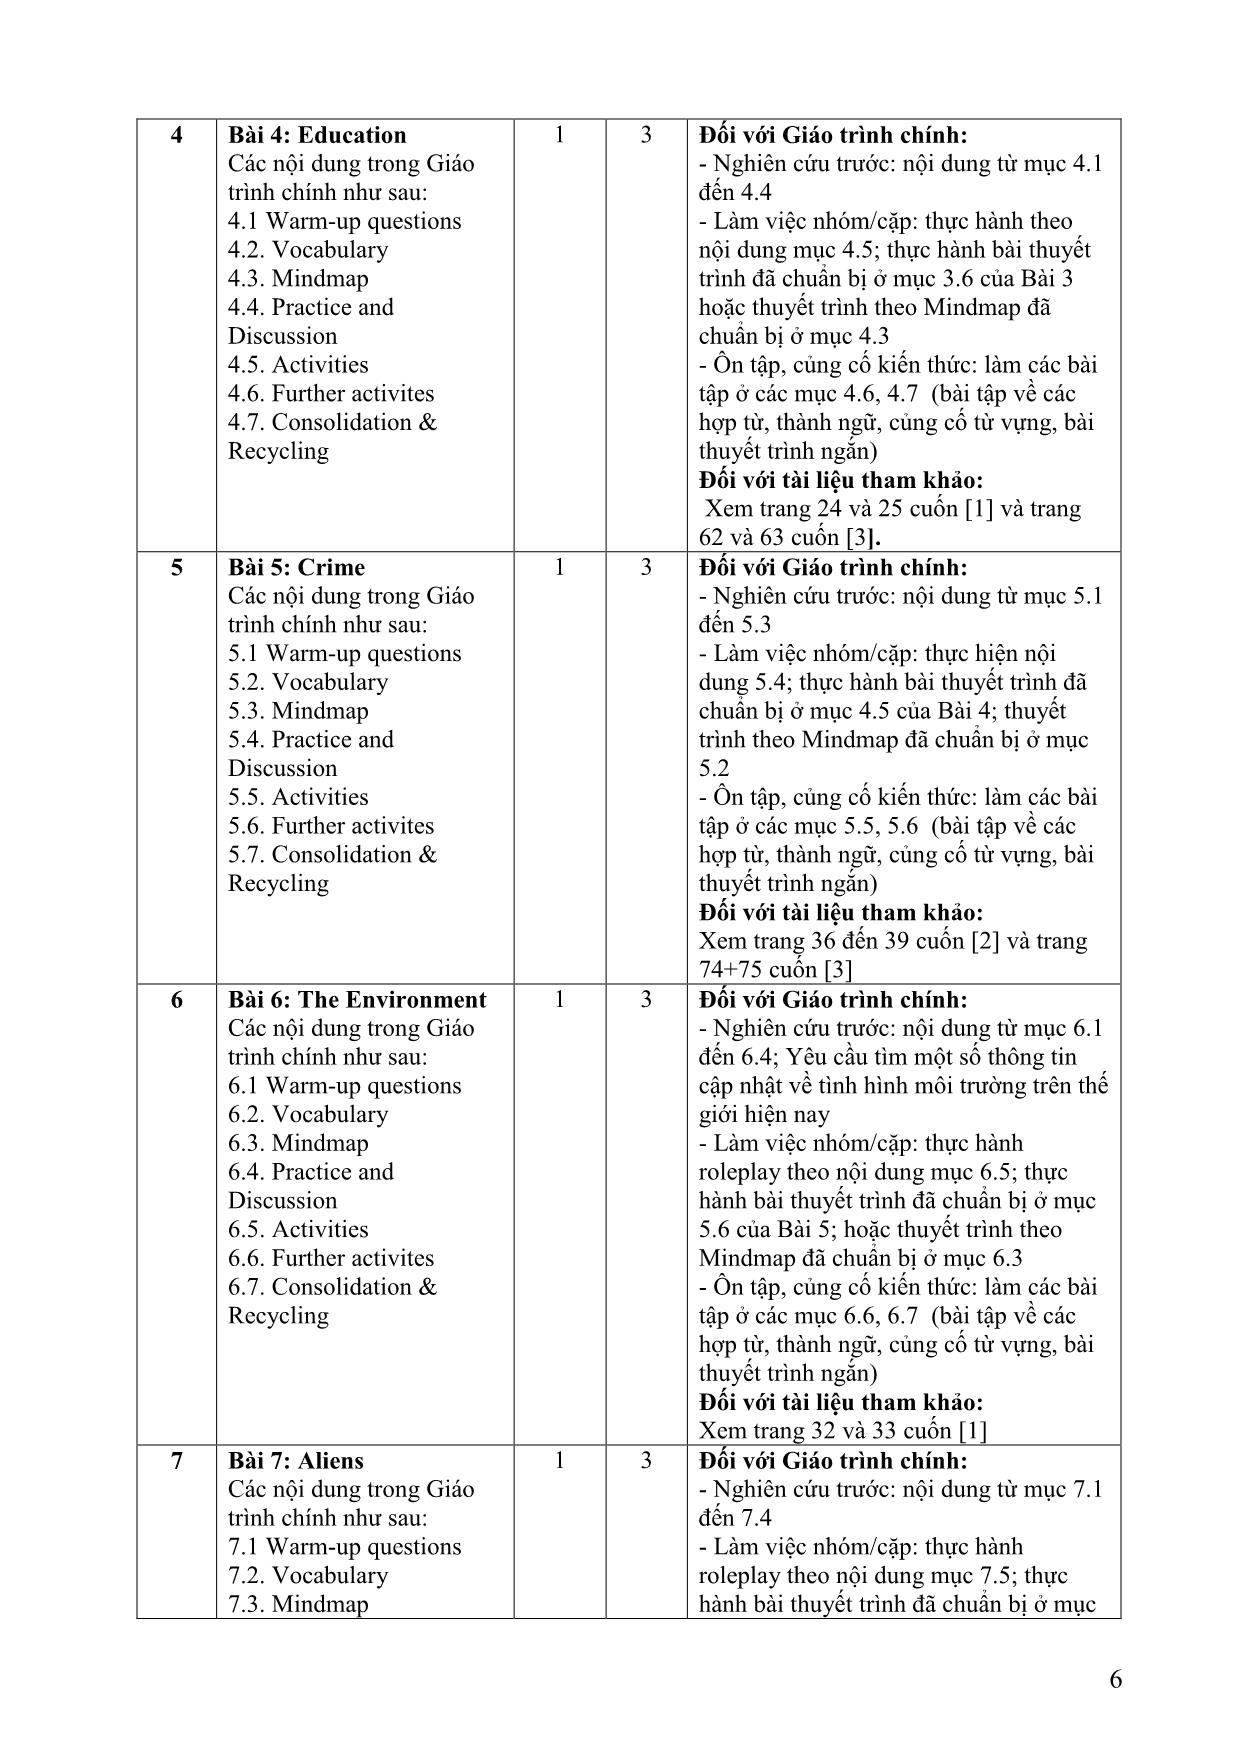 Đề cương chi tiết học phần Nói tiếng Anh 2 (Speaking 2) trang 6